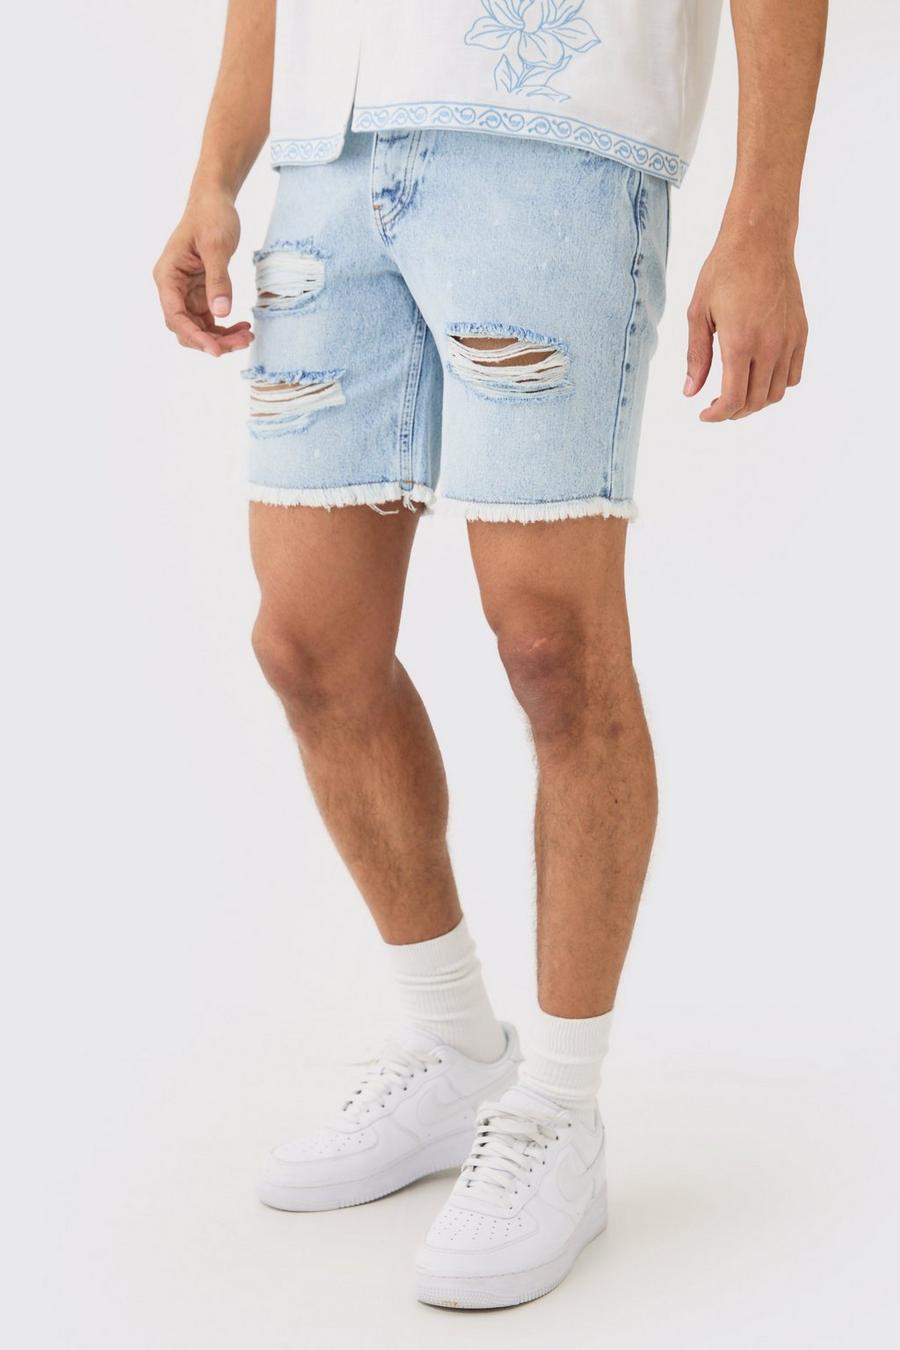 Pantalones cortos vaqueros ajustados sin tratar rotos con salpicaduras de pintura en azul hielo, Ice blue